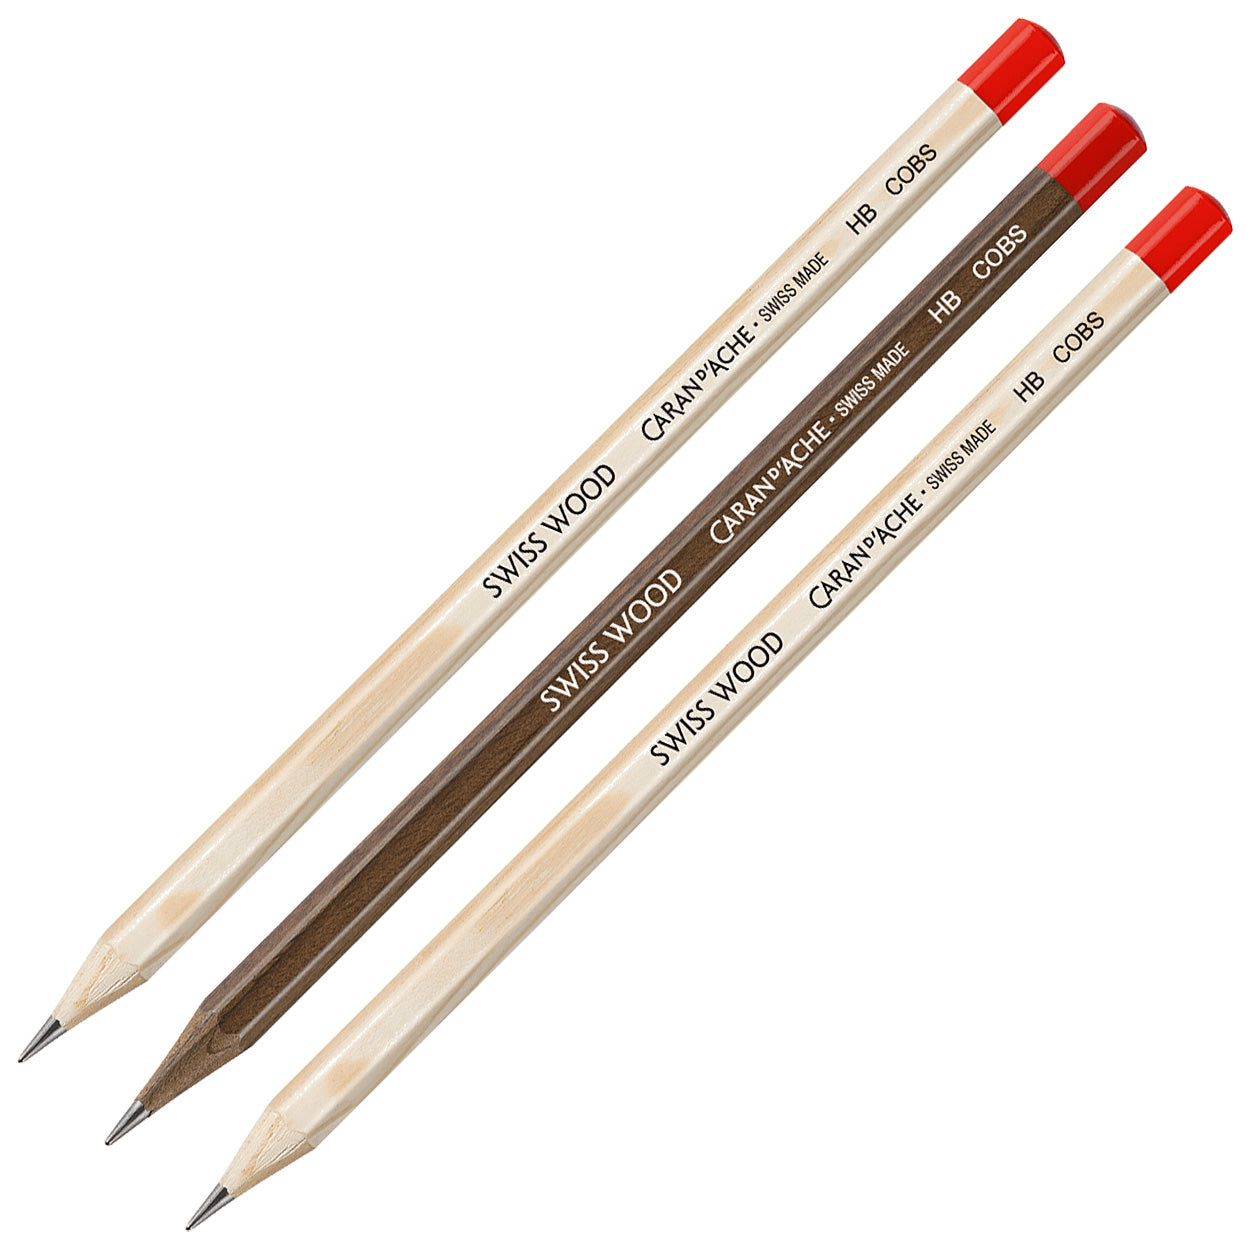 Caran D'Ache Swiss Wood Three Pencil Gift Set